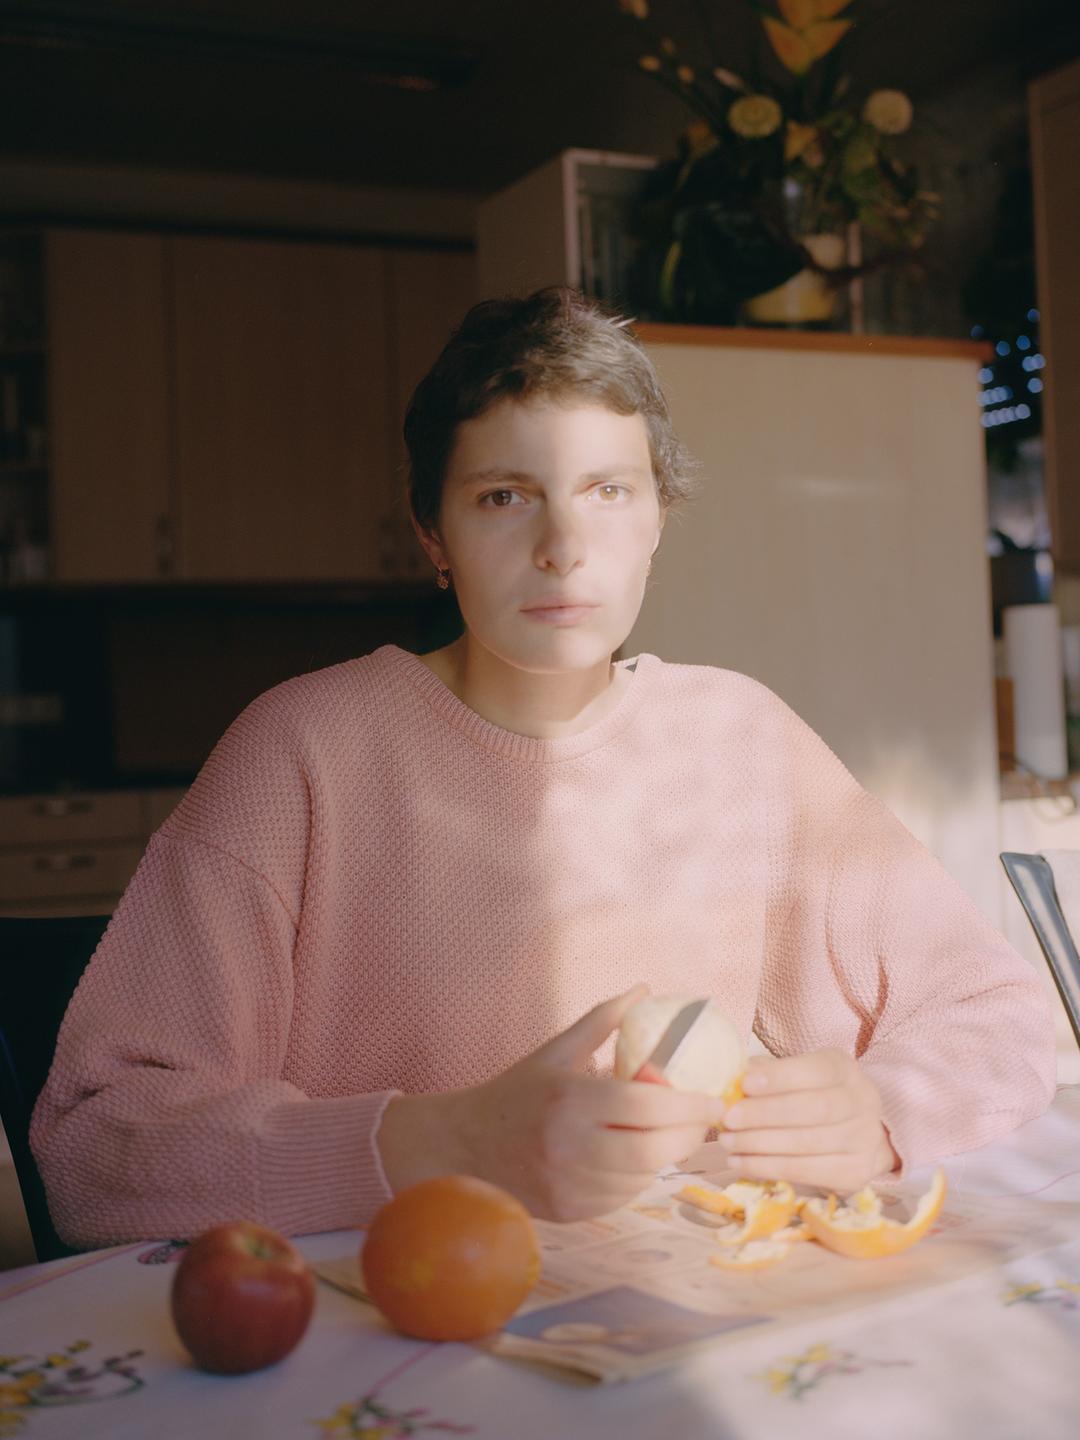 Die Fotografin Mika Sperling sitzt an einem Tisch mit Orangen. Sie trägt einen pastellfarbenen Strickpullover.